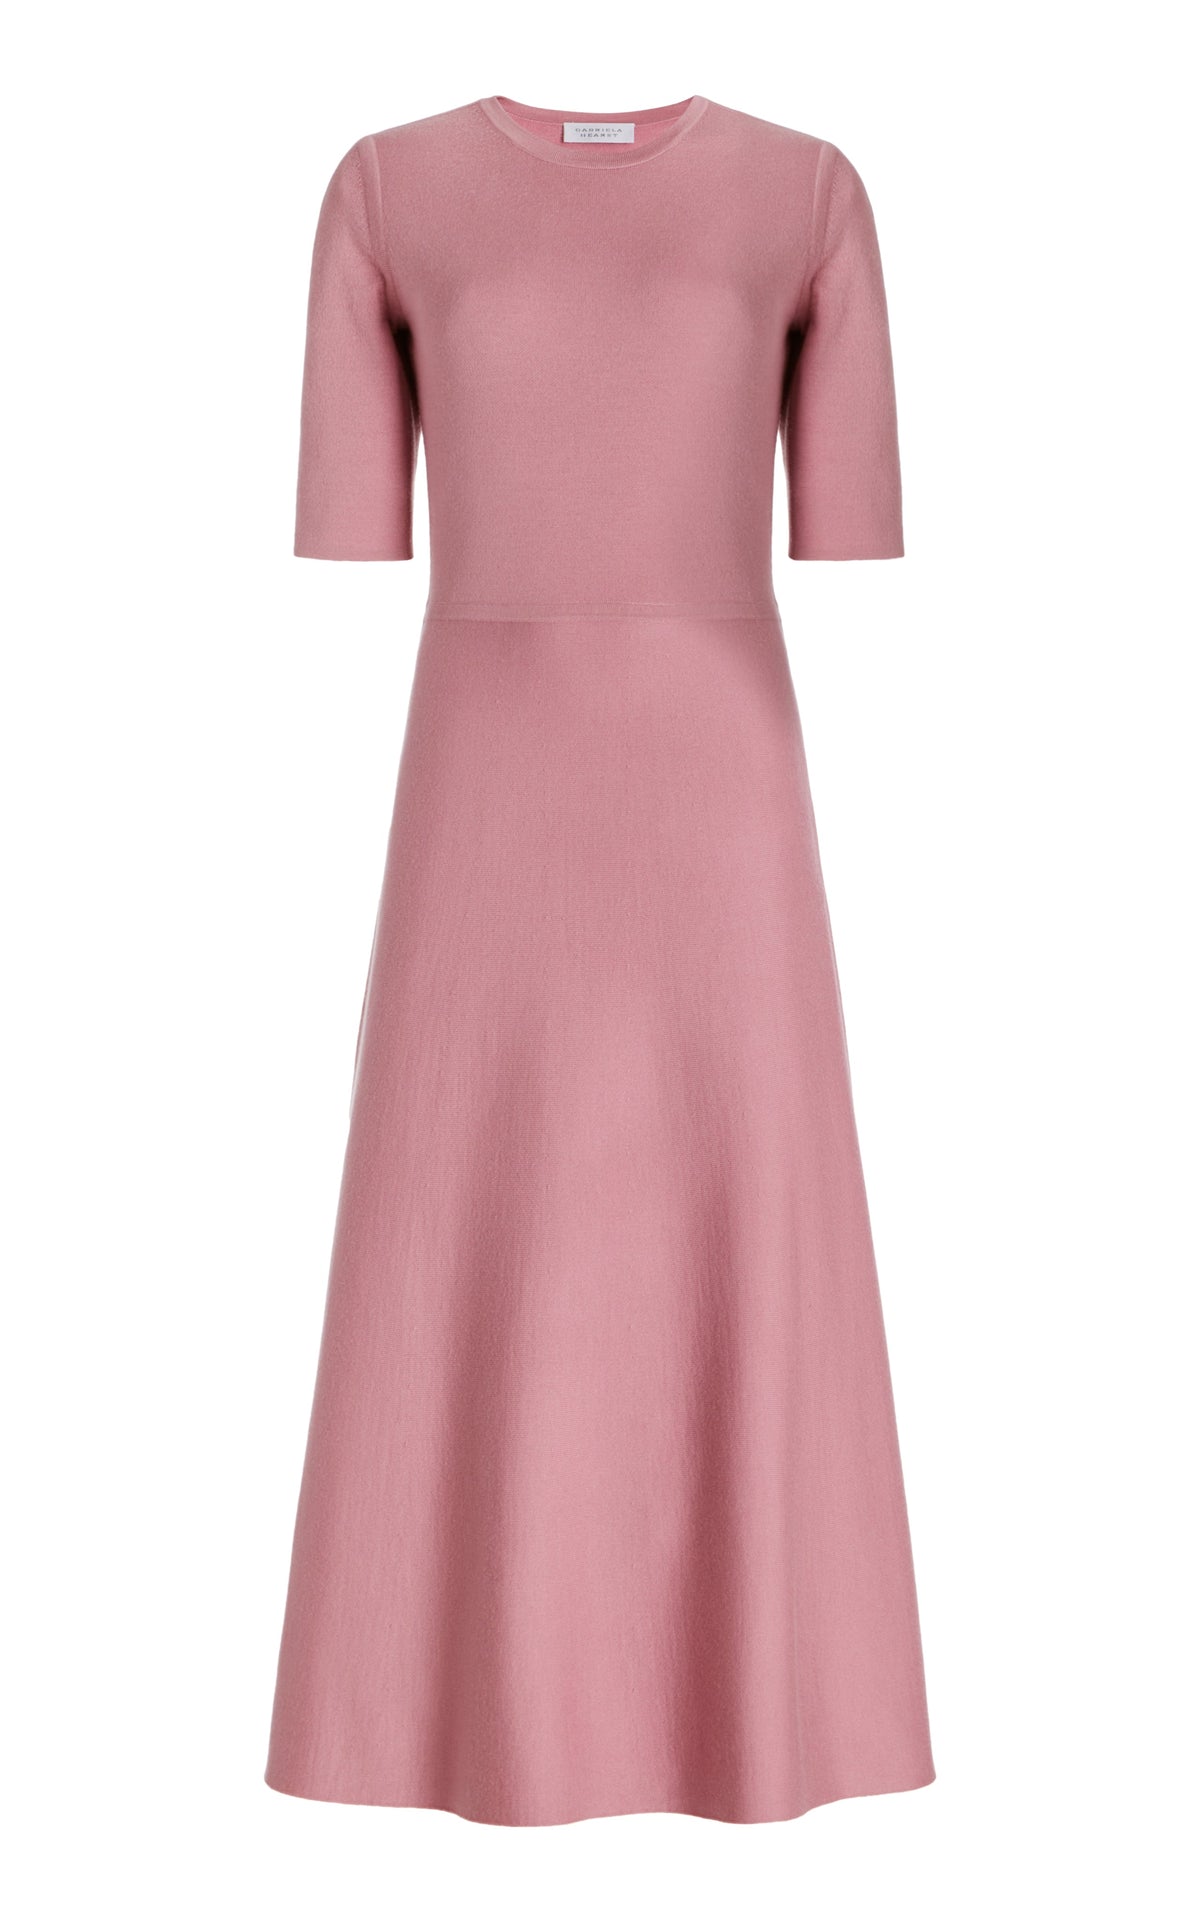 Seymore Knit Dress in Rose Quartz Cashmere Silk